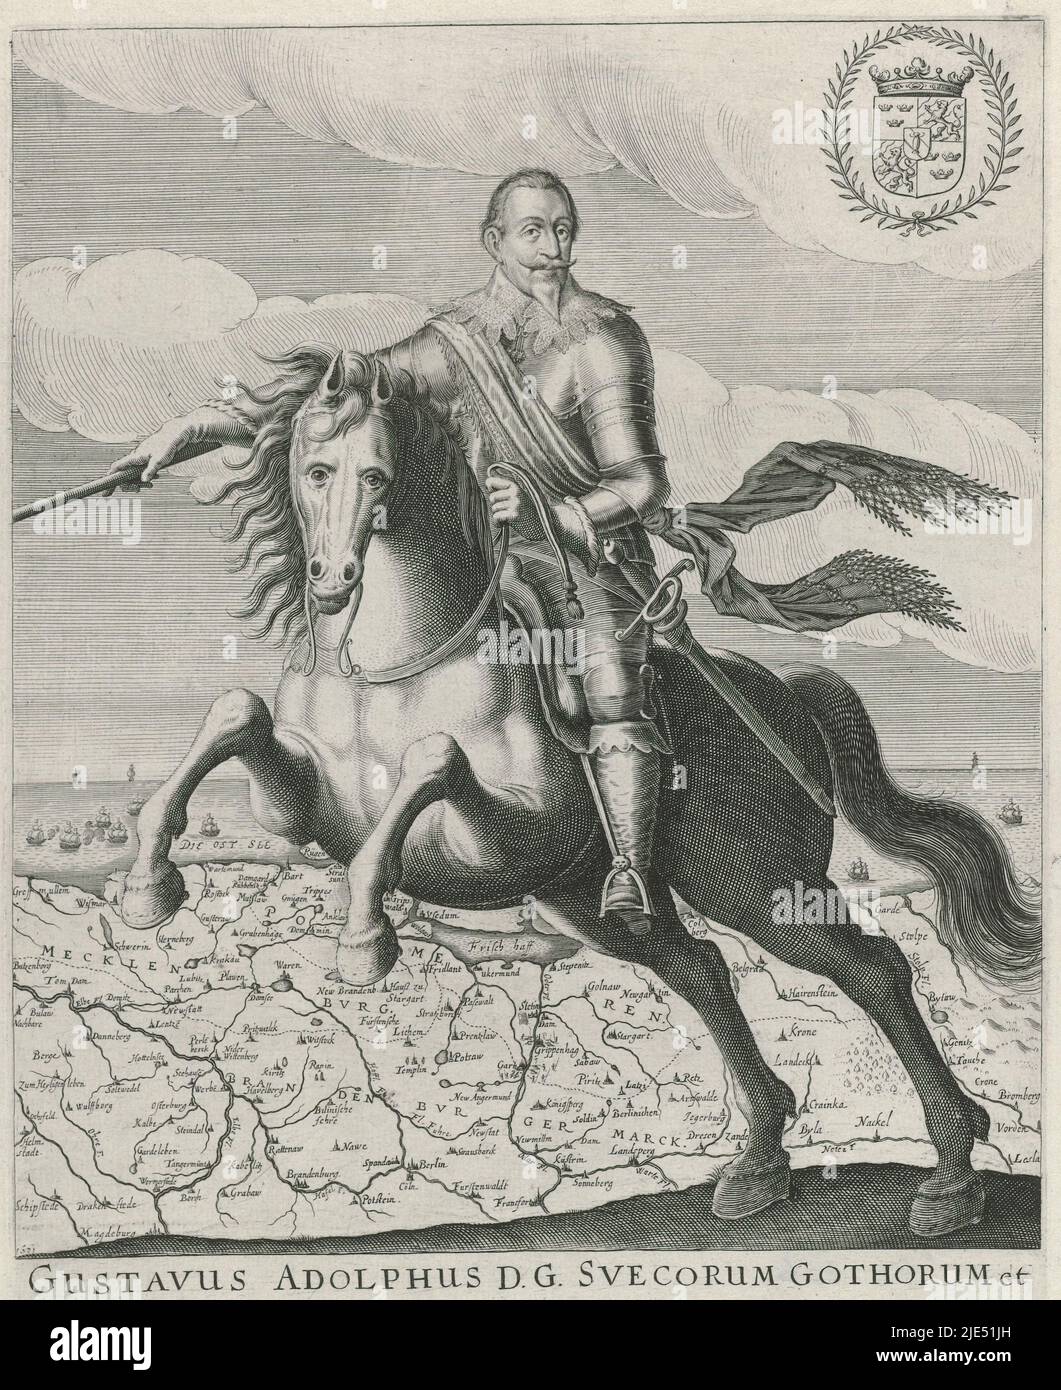 Portrait équestre de Gustav II Adolf, roi de Suède, imprimeur: Jacob van der Heyden, (mentionné sur l'objet), 1631, papier, gravure, h 327 mm × l 240 mm Banque D'Images